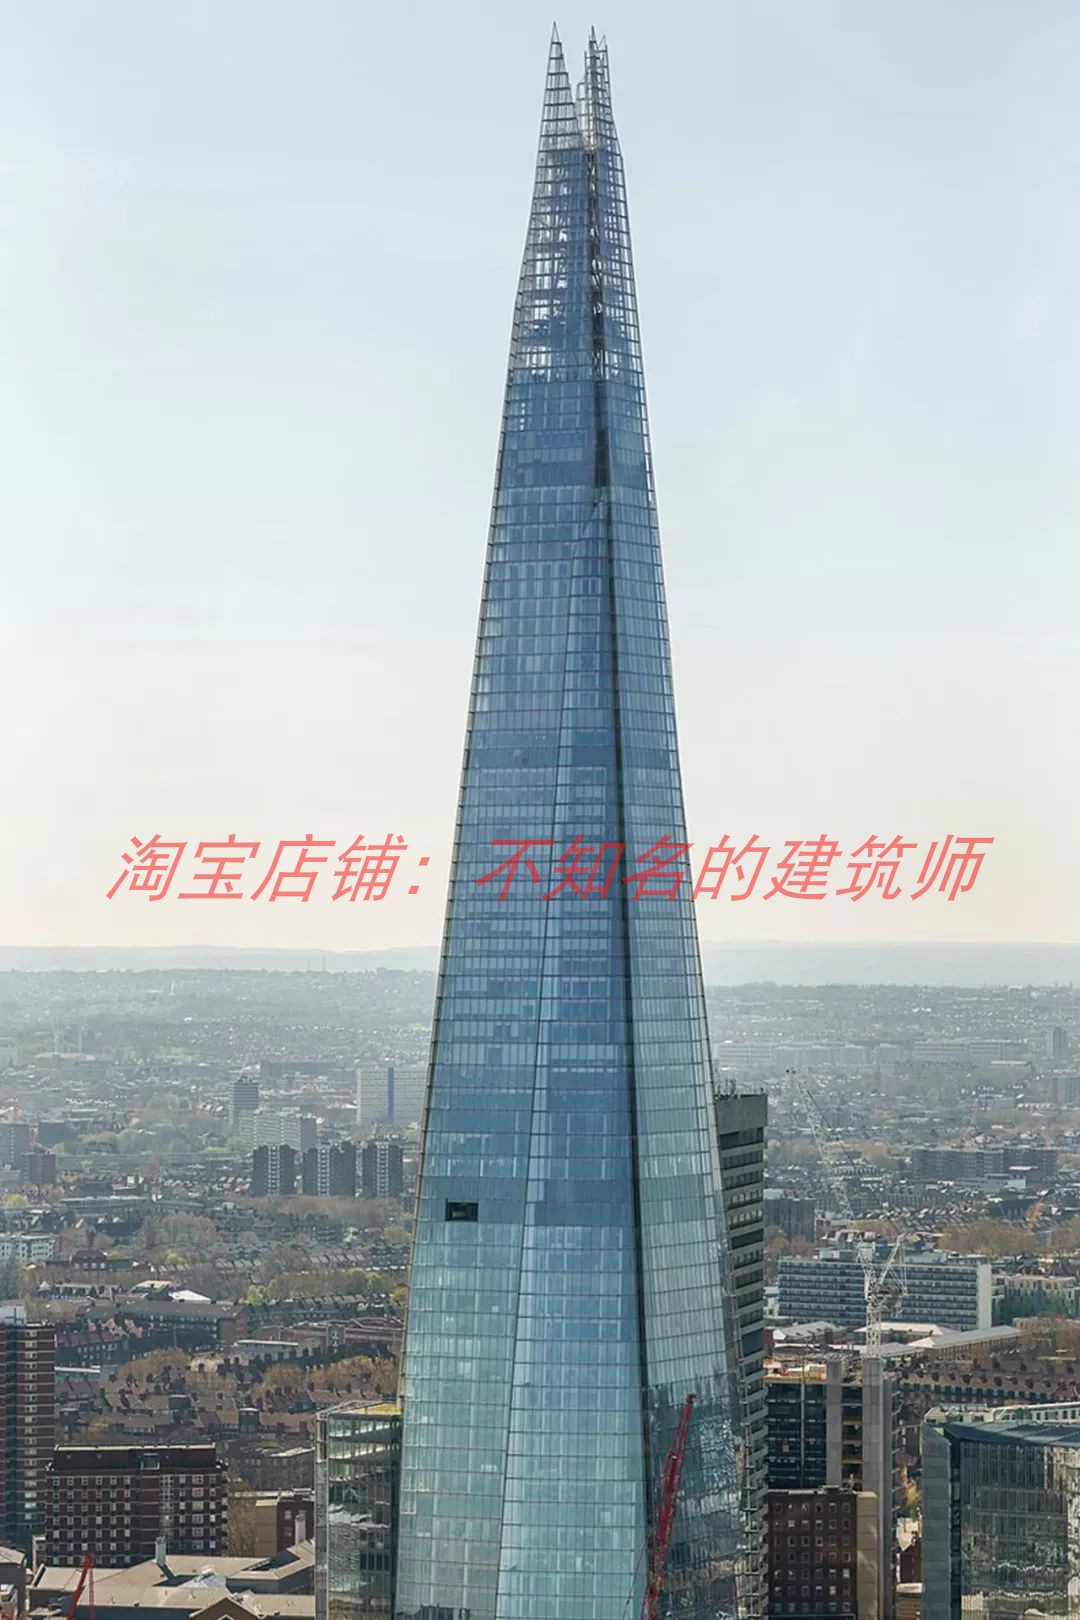 【伦佐·皮亚诺】伦敦碎片大厦规划设计方案309米英国最高地标